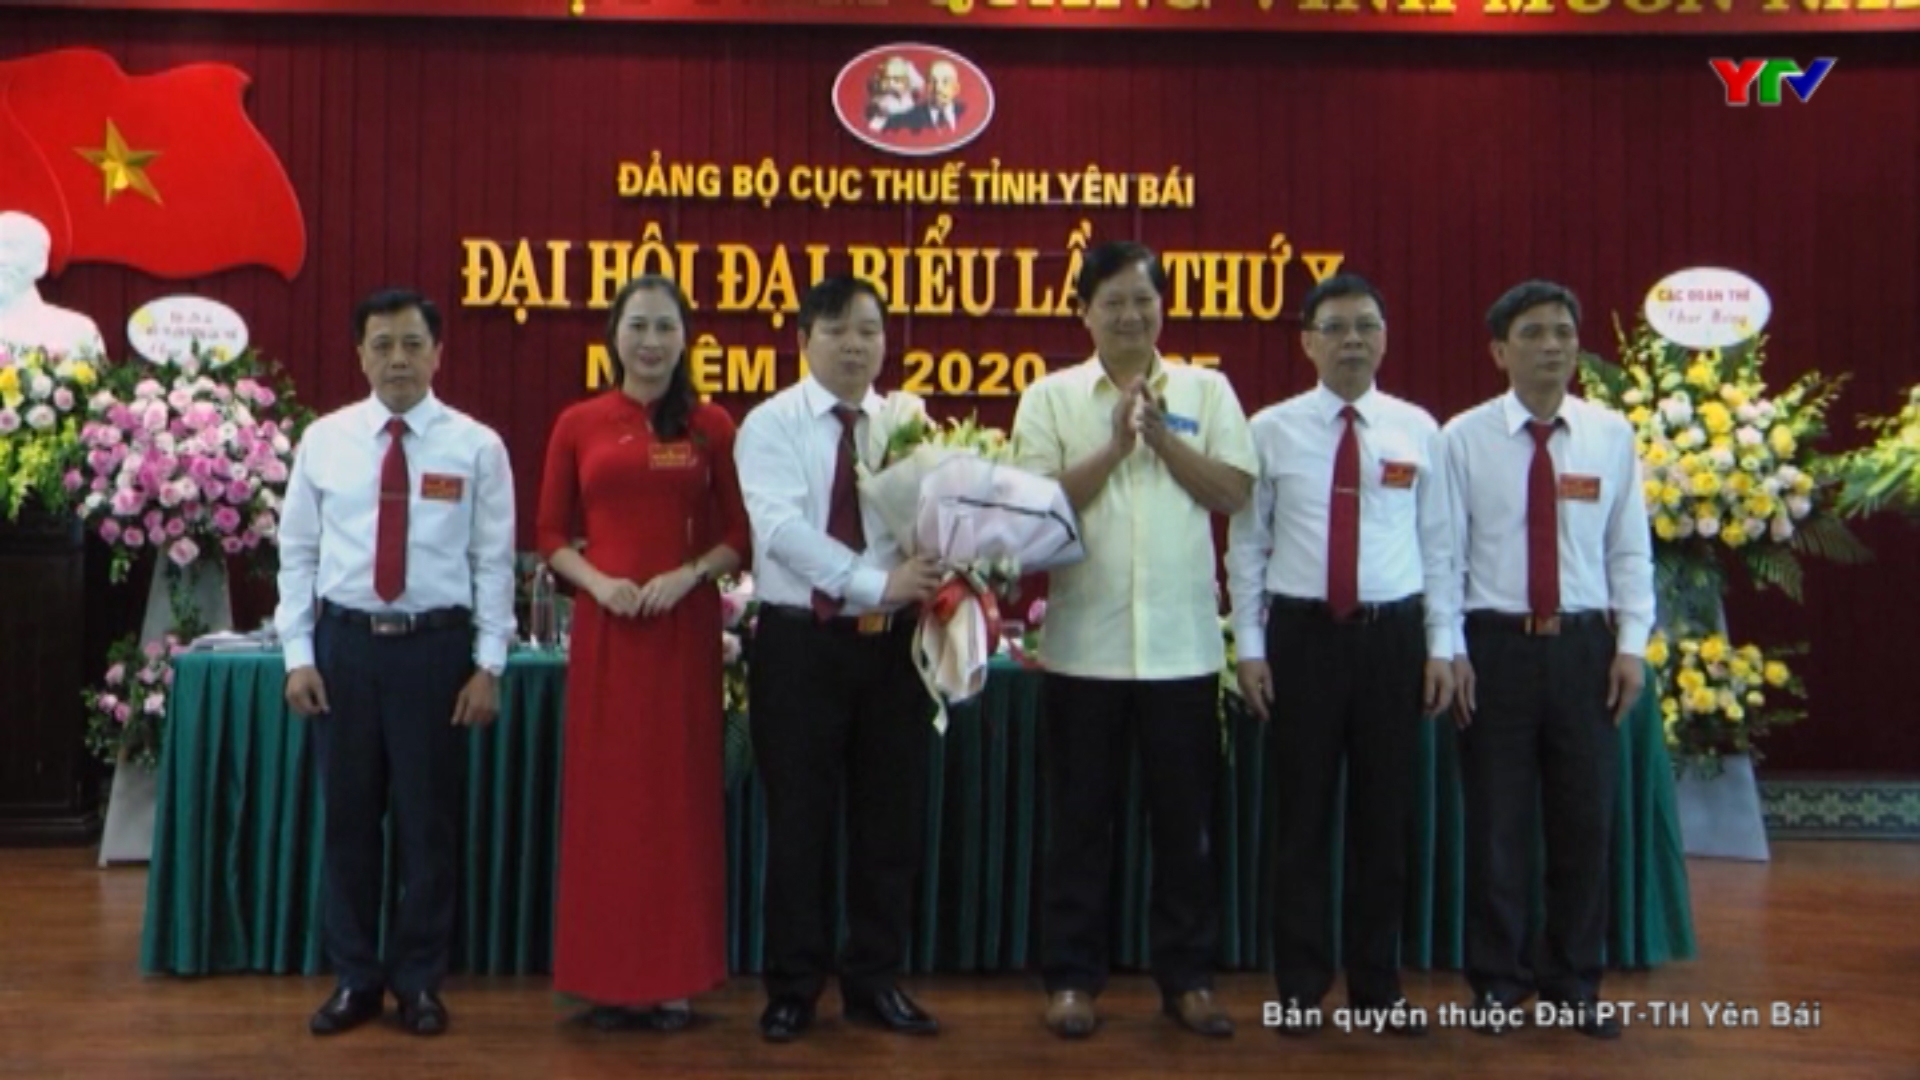 Đại hội Đảng bộ Cục thuế tỉnh Yên Bái lần thứ X, nhiệm kỳ 2020-2025